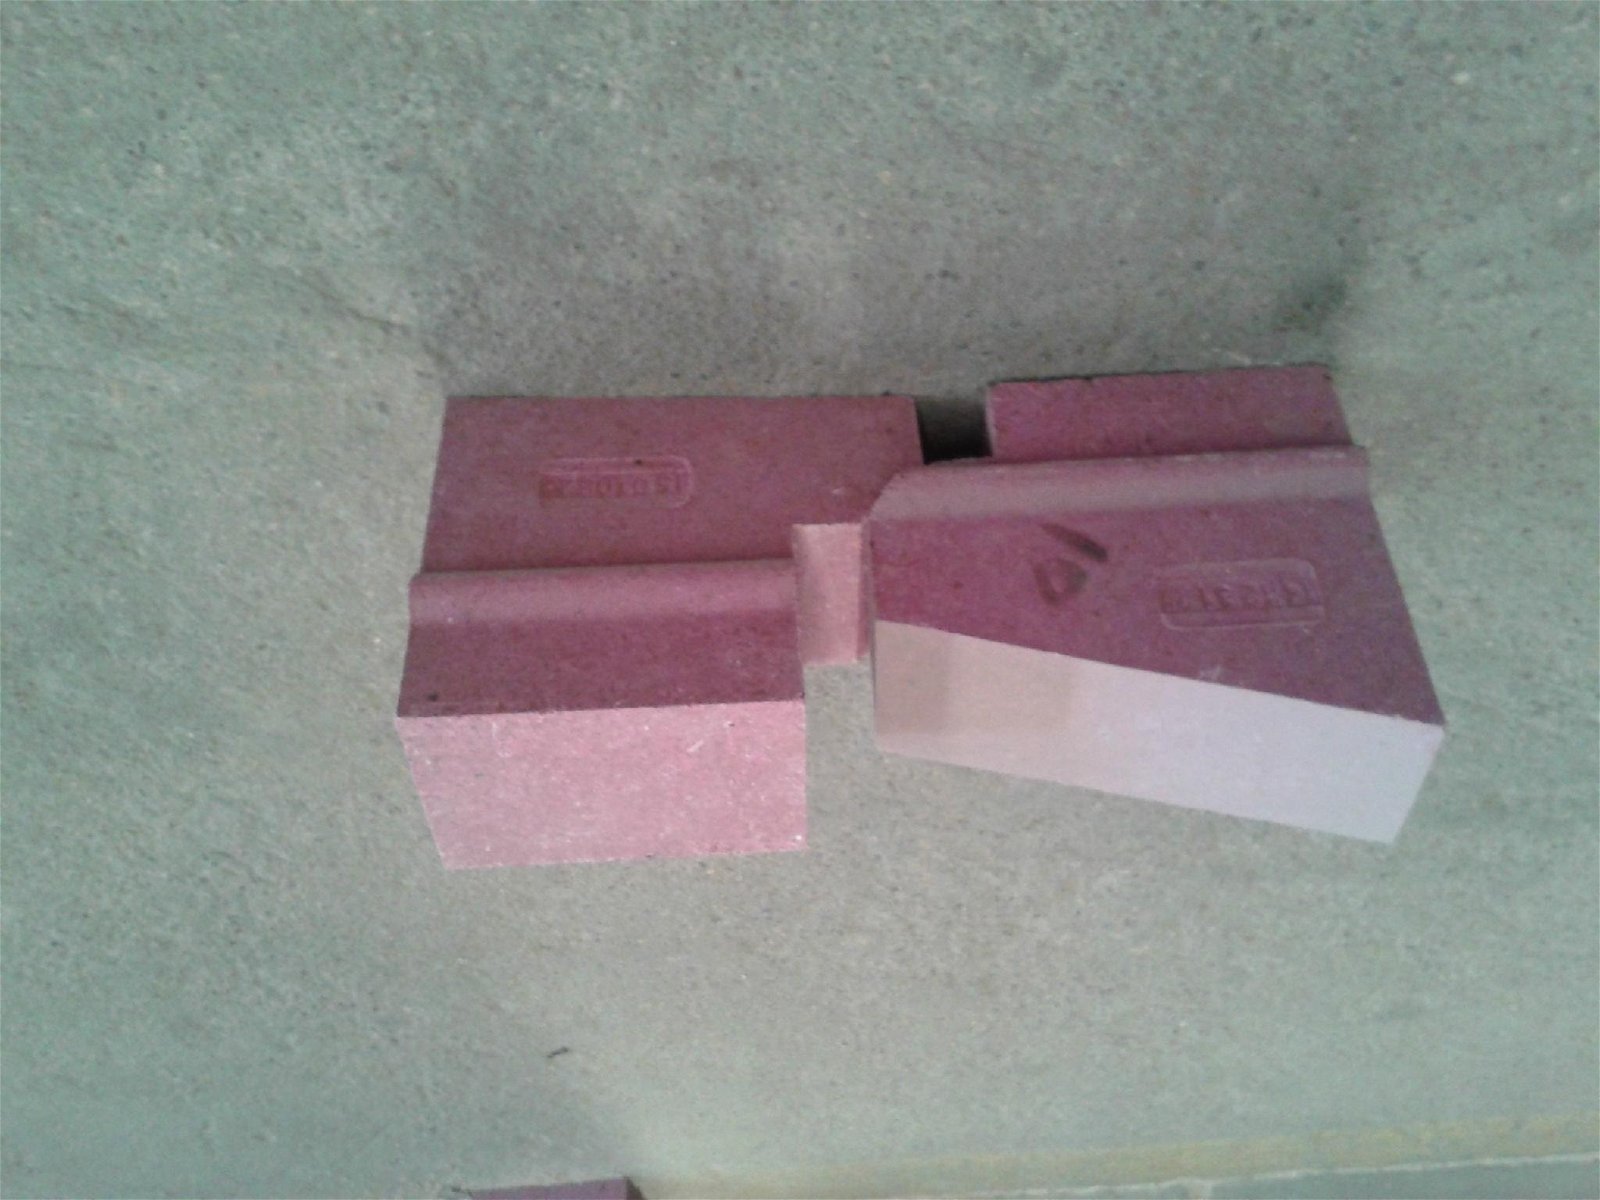 high alumina brick